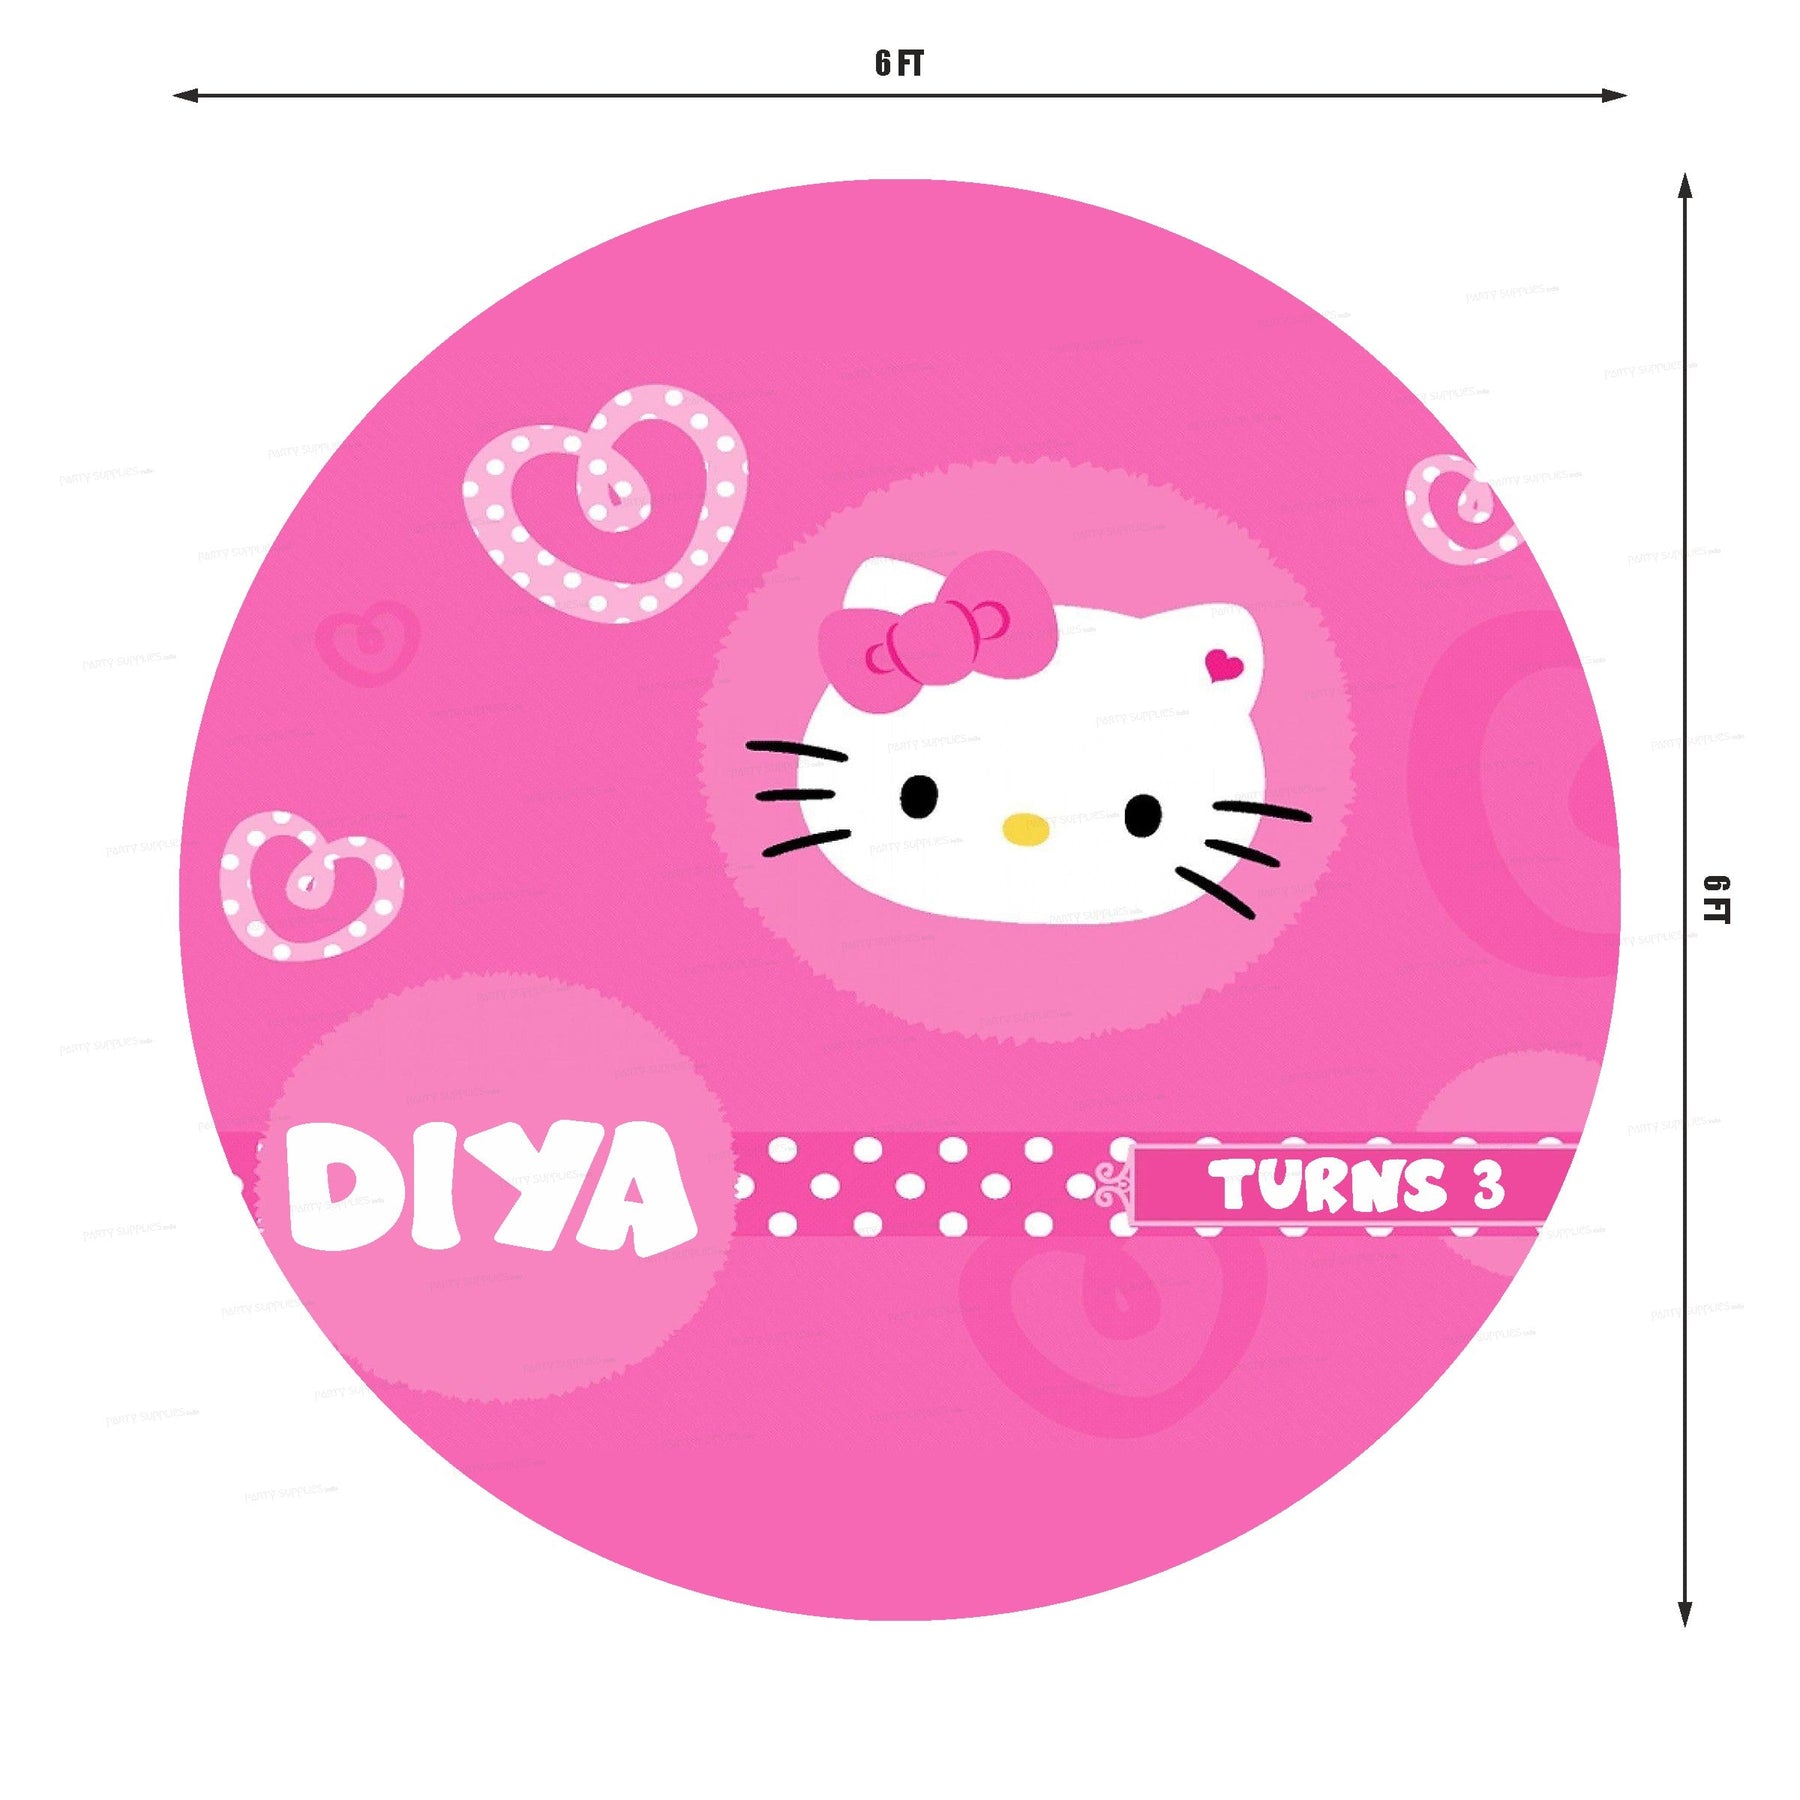 PSI Hello Kitty Theme with Baby Name Round Backdrop